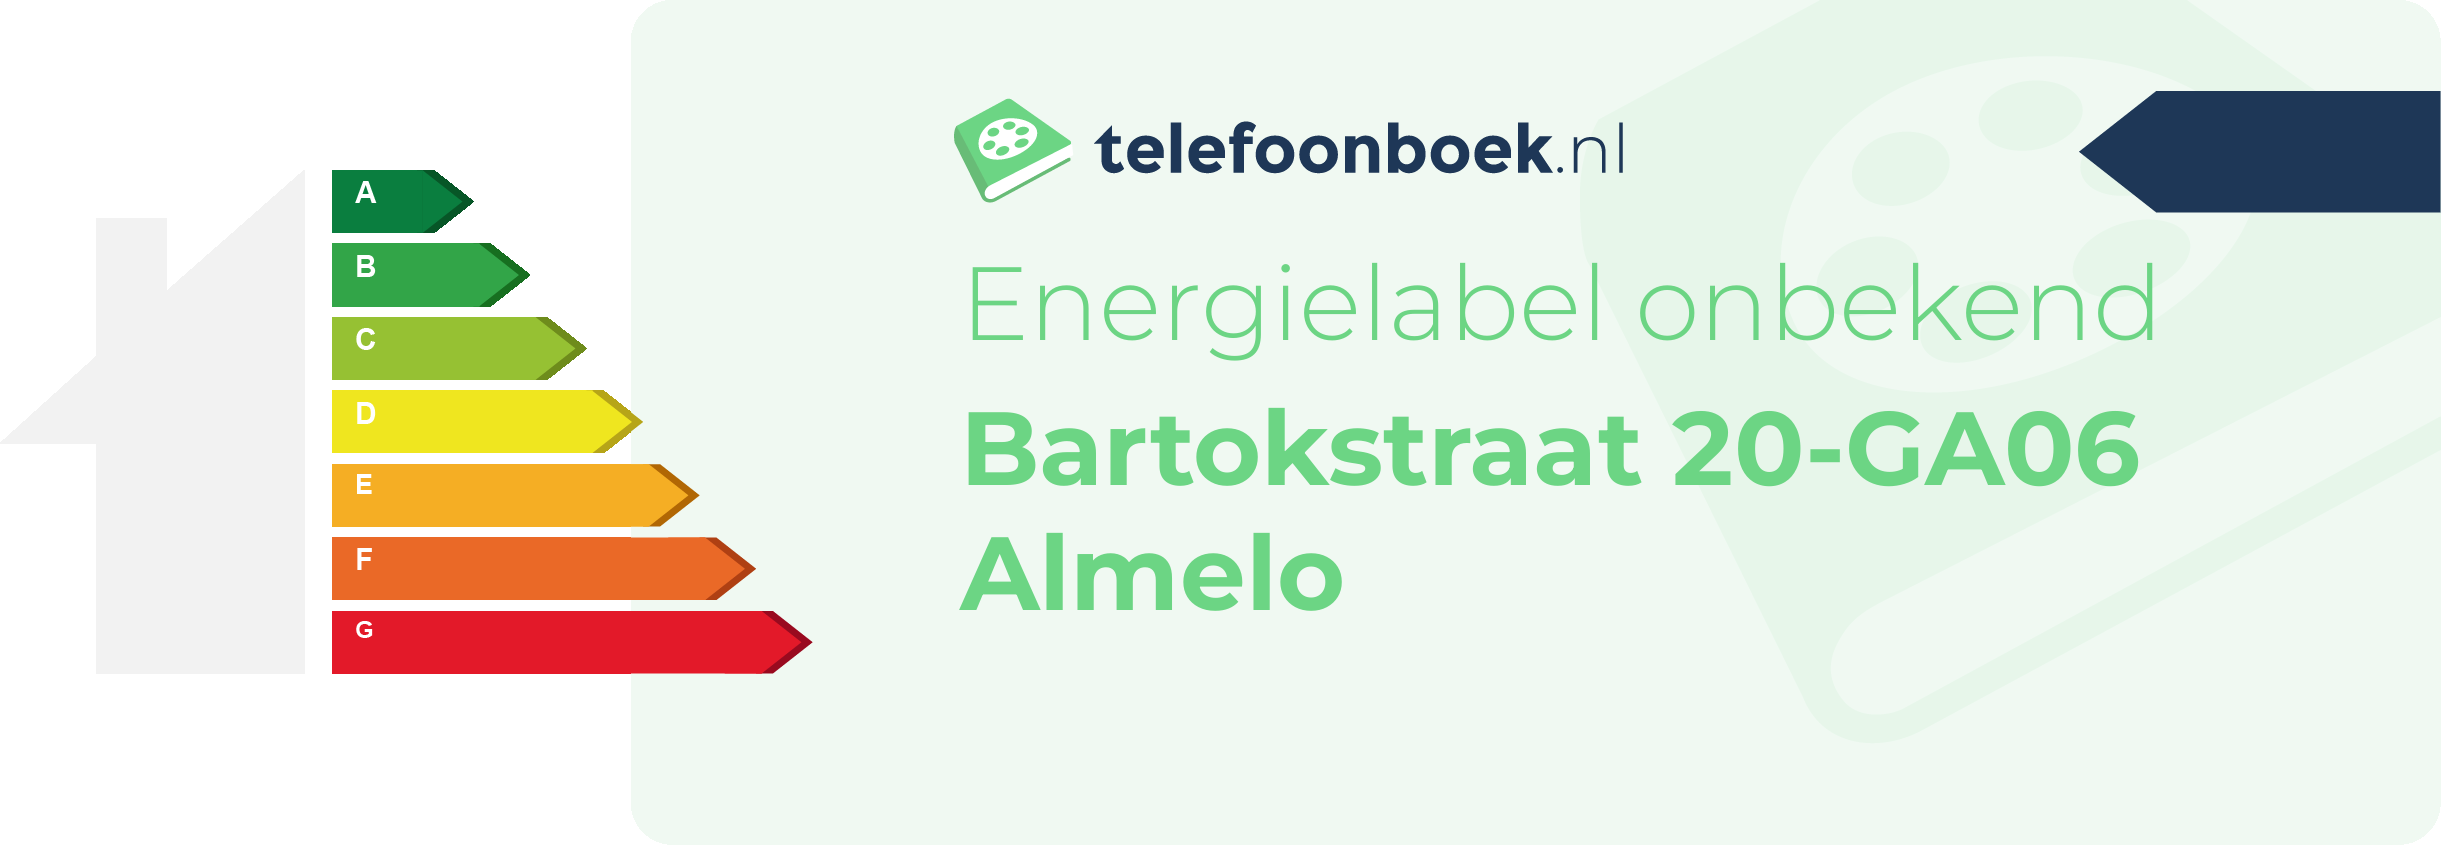 Energielabel Bartokstraat 20-GA06 Almelo